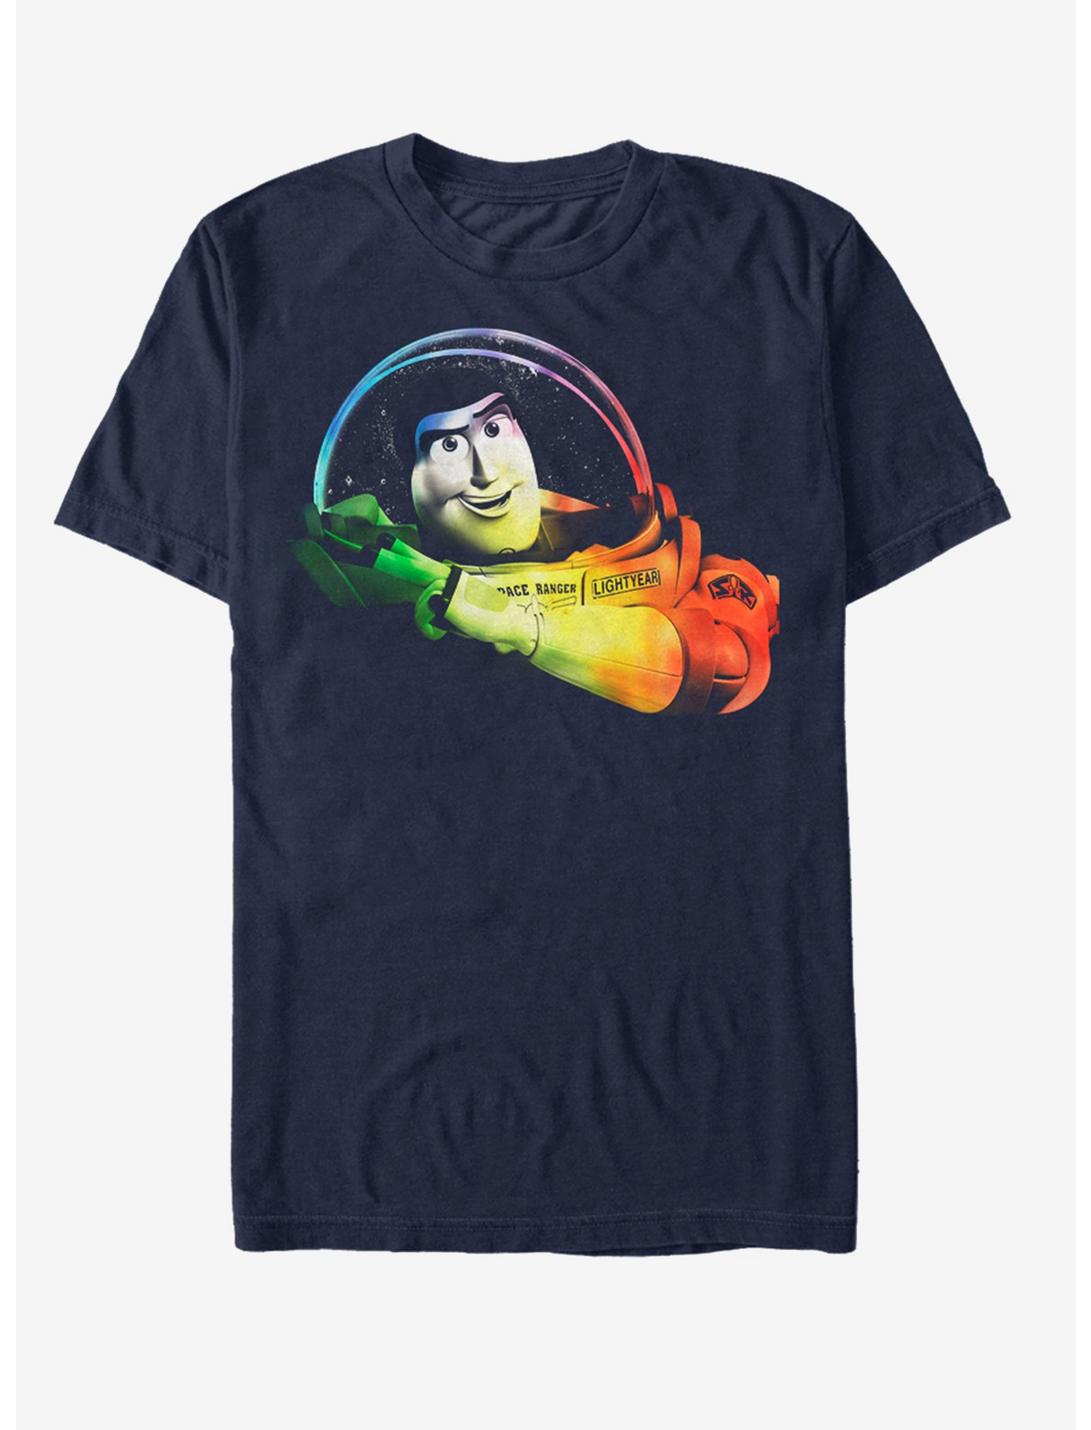 Disney Pixar Toy Story Rainbow Buzz T-Shirt, NAVY, hi-res